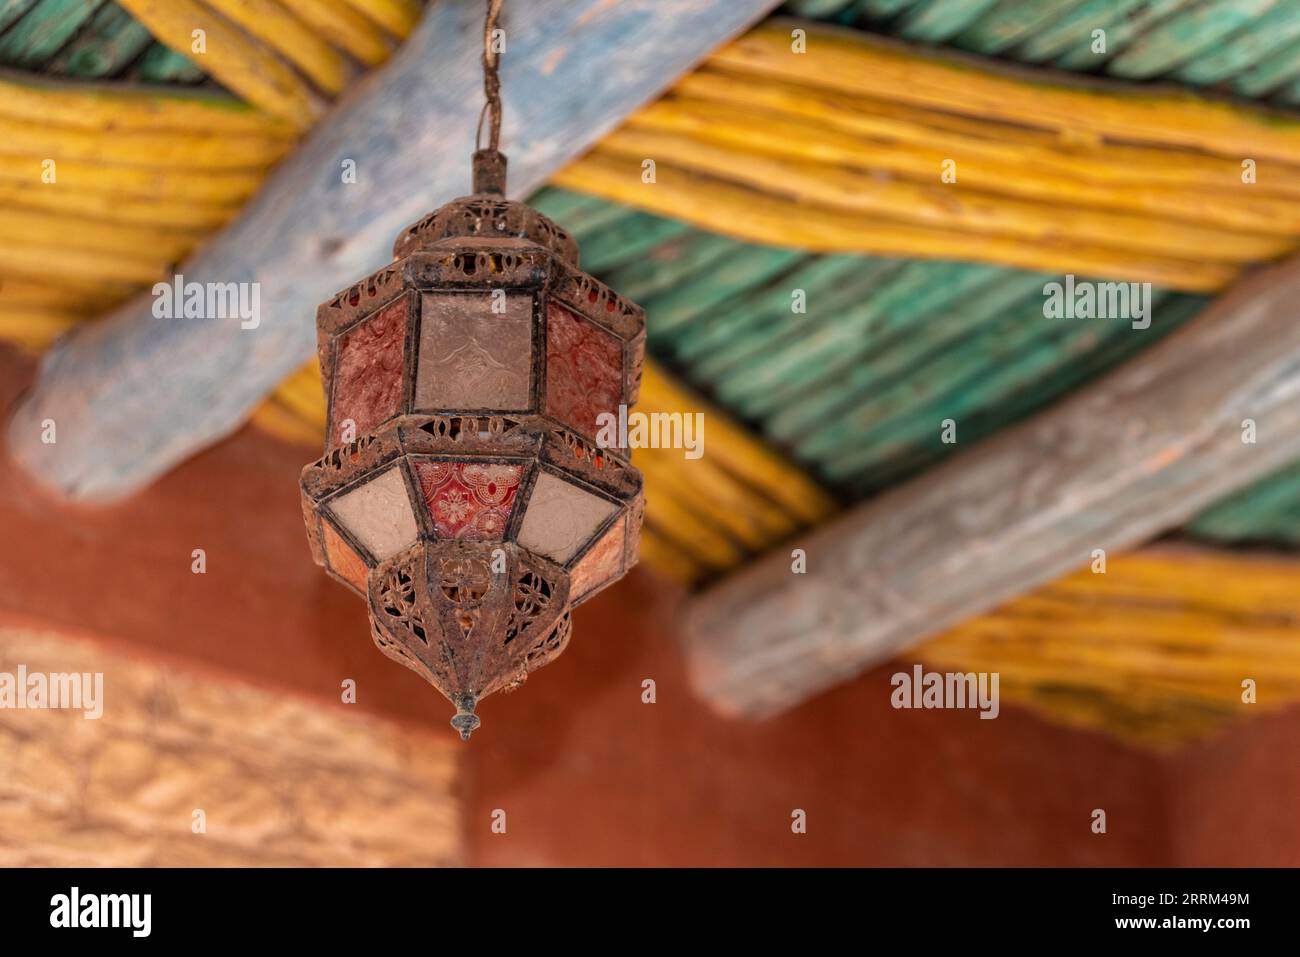 Antica lanterna marocchina sospesa da un soffitto in legno costruito tradizionalmente, Agadir in Marocco Foto Stock